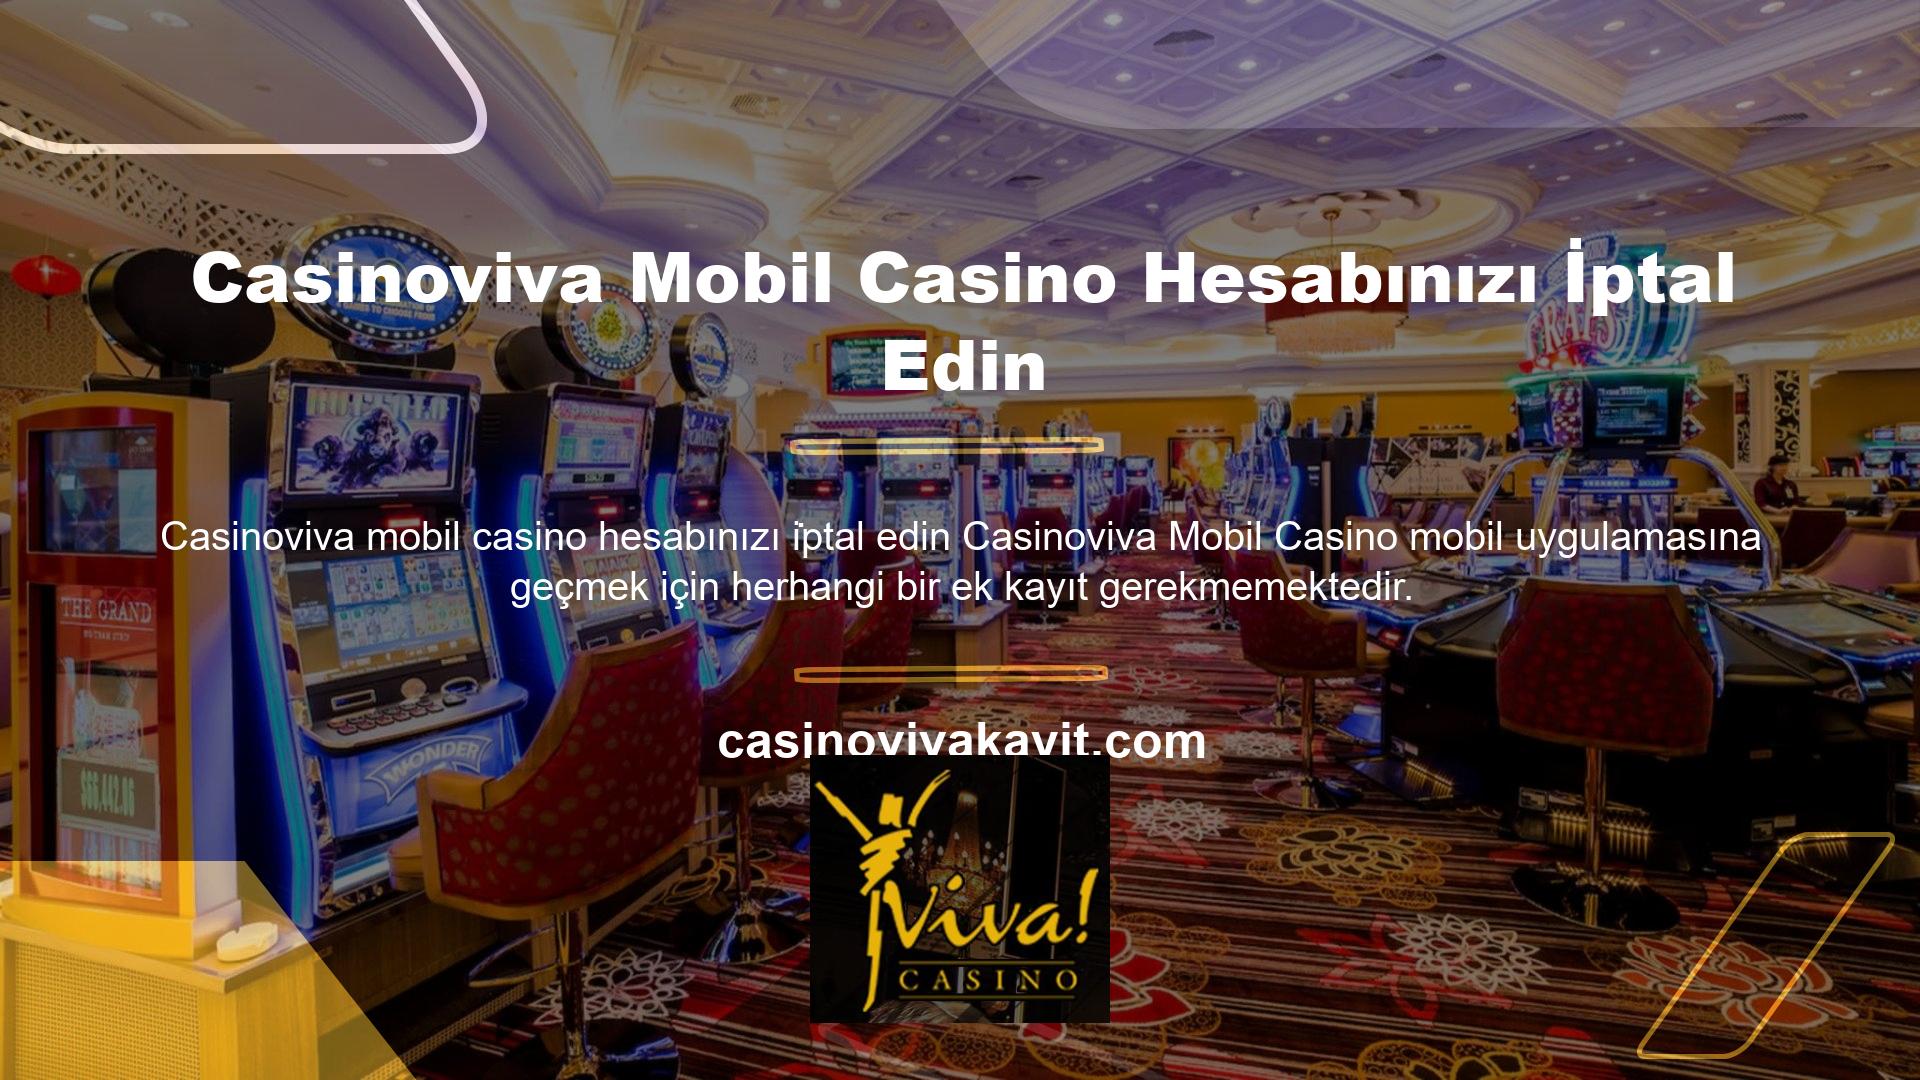 Bunun için Casinoviva Mobil Casino hesabınızı iptal etmeniz ve üyelik bilgilerinizi kullanarak siteye giriş yapmanız gerekmektedir